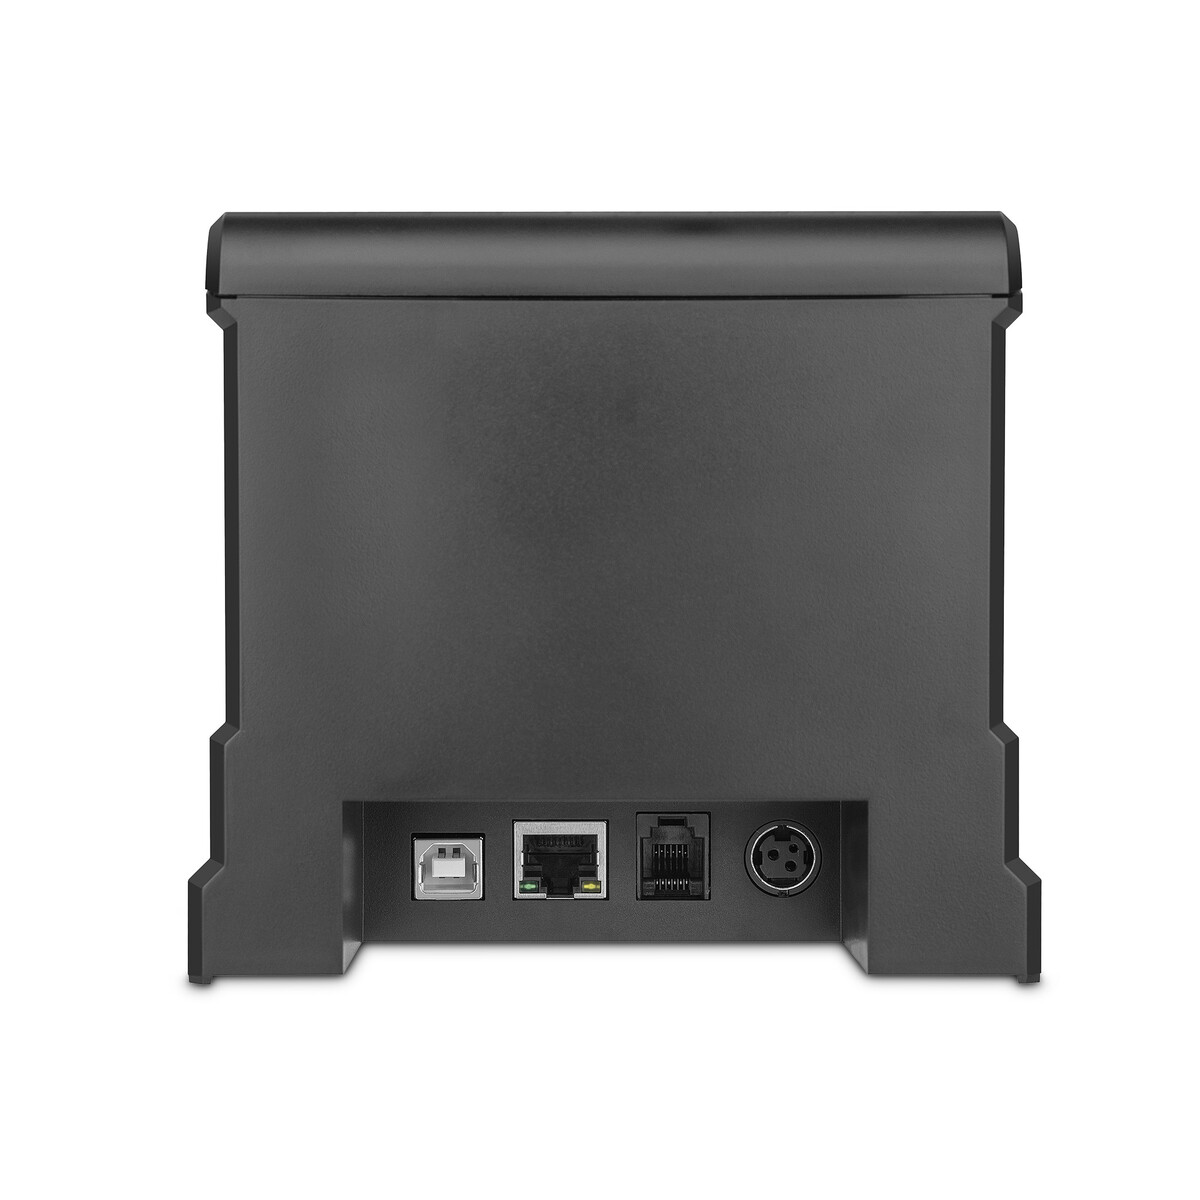 MINI PRINTER QIAN TÉRMICA 80MM 220MM/S USB+LAN/COR AUT (QOP-T80UL-RI-02)